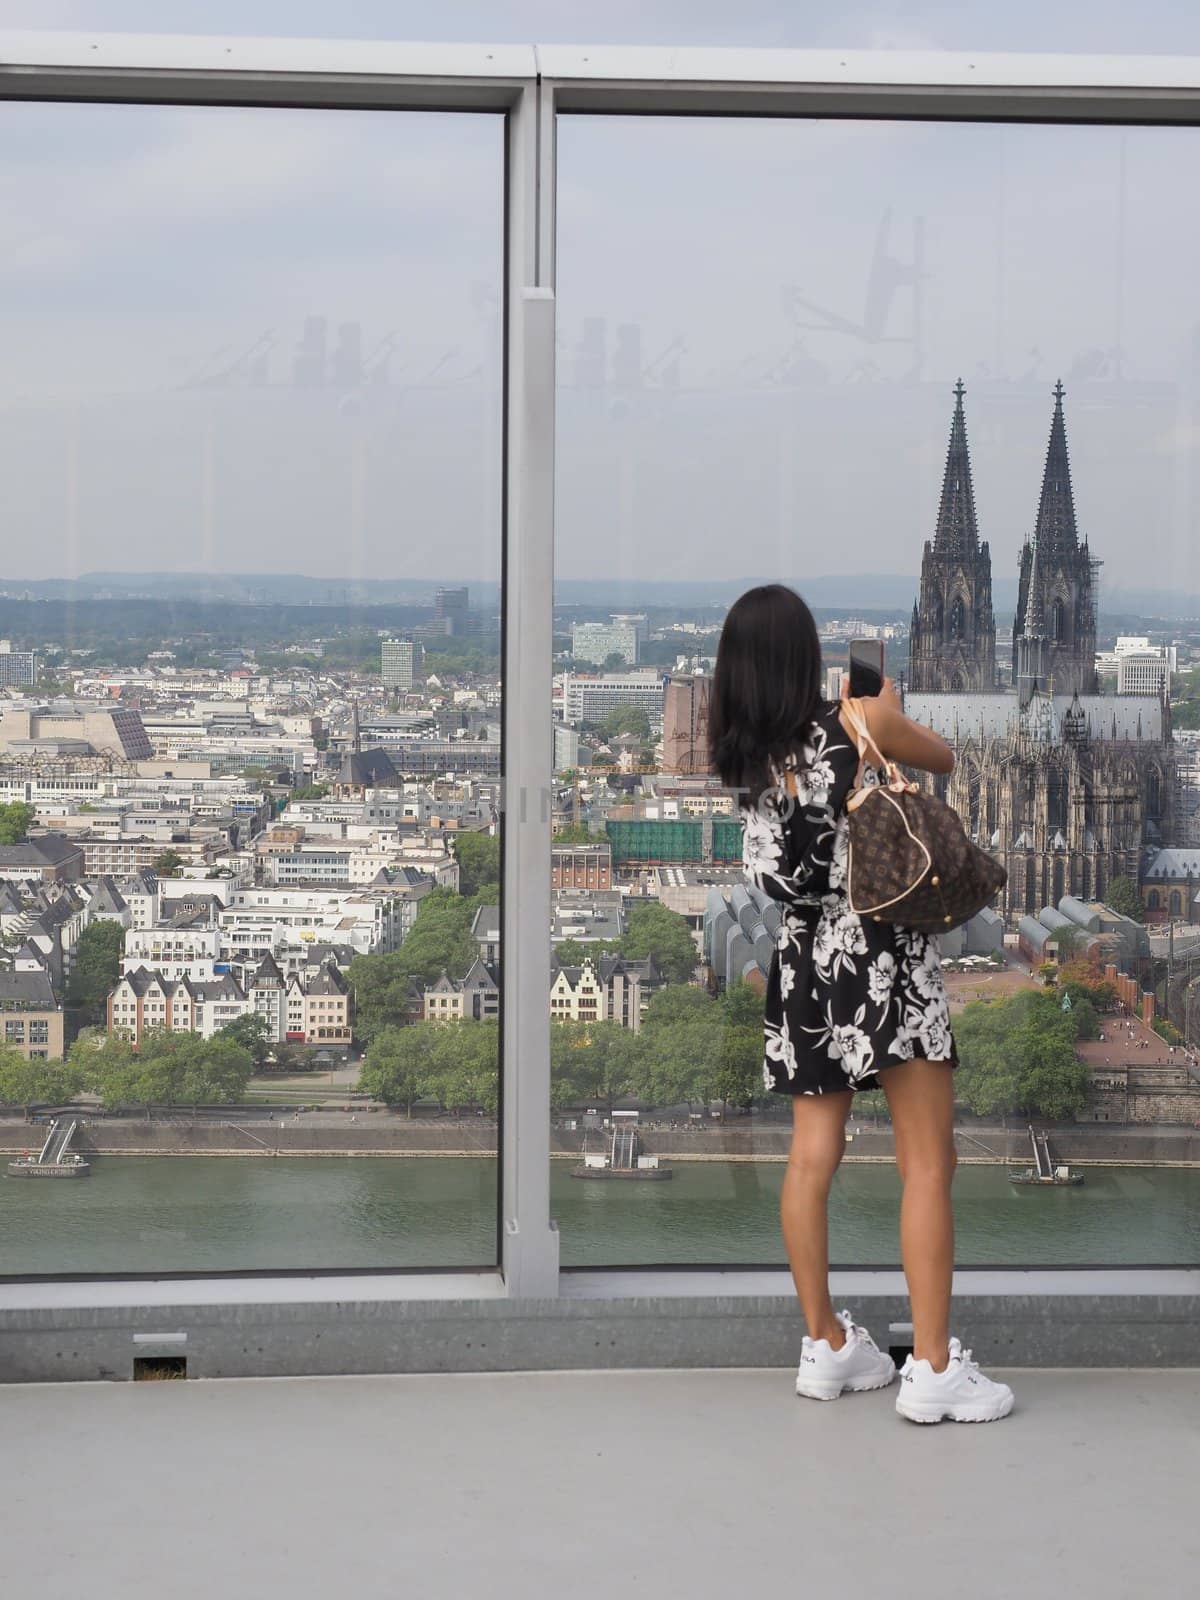 KOELN, GERMANY - CIRCA AUGUST 2019: People on Koelntriangle skyscraper sightseeing watching platform